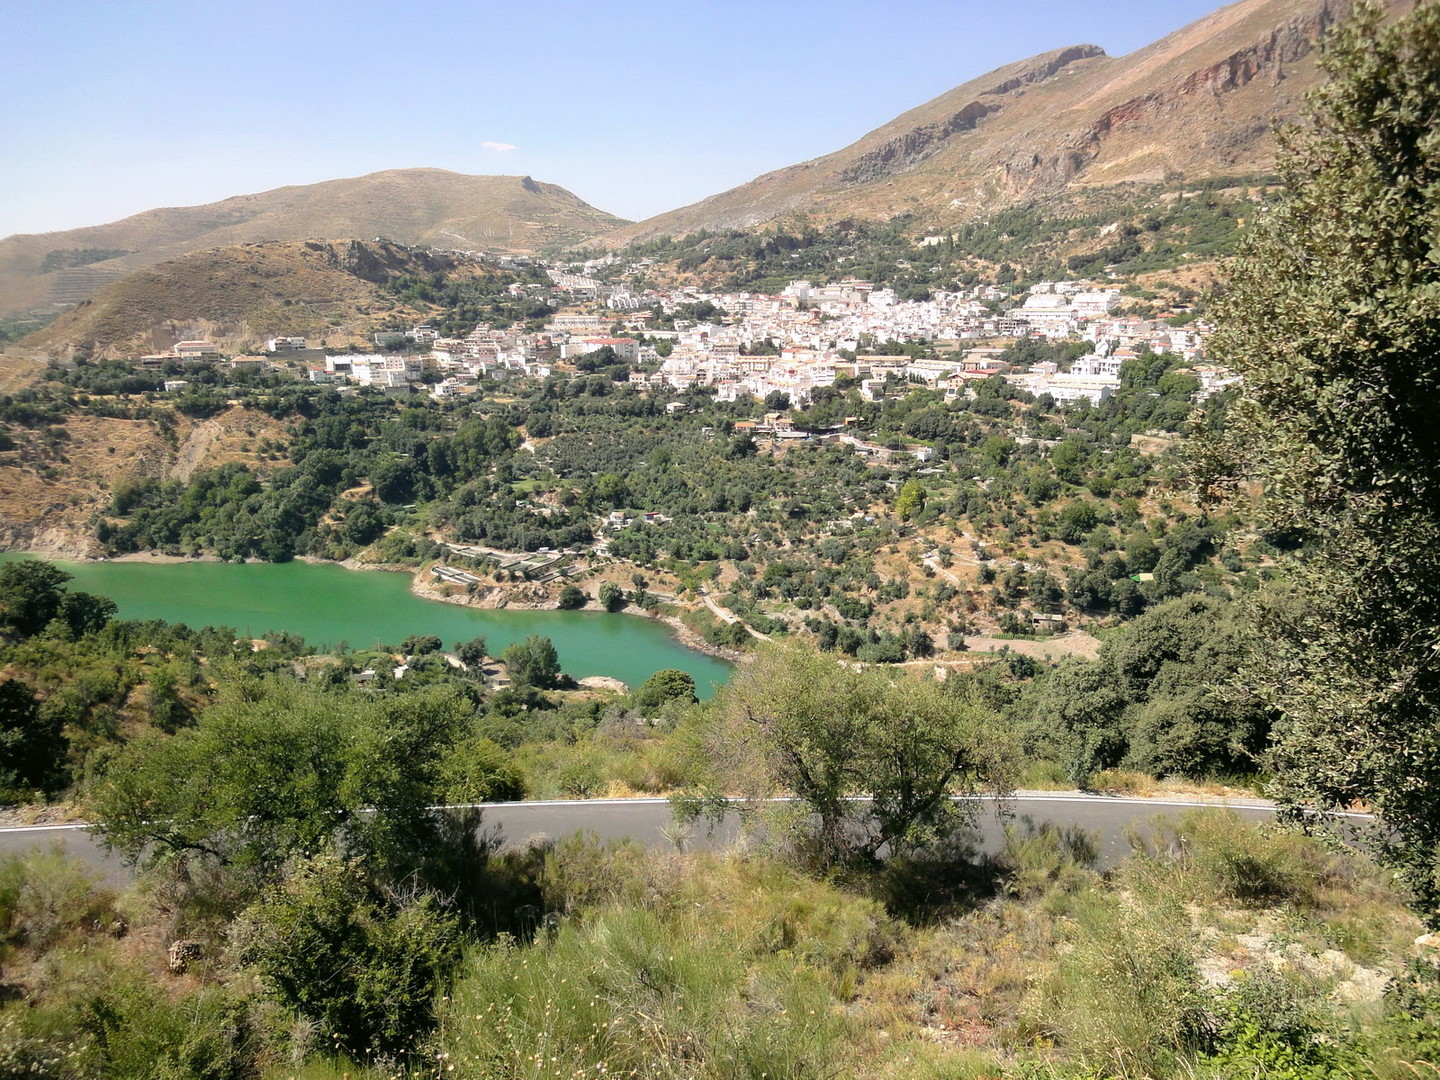 Blick auf Güejar Sierra von der Serpentinenstrecke.